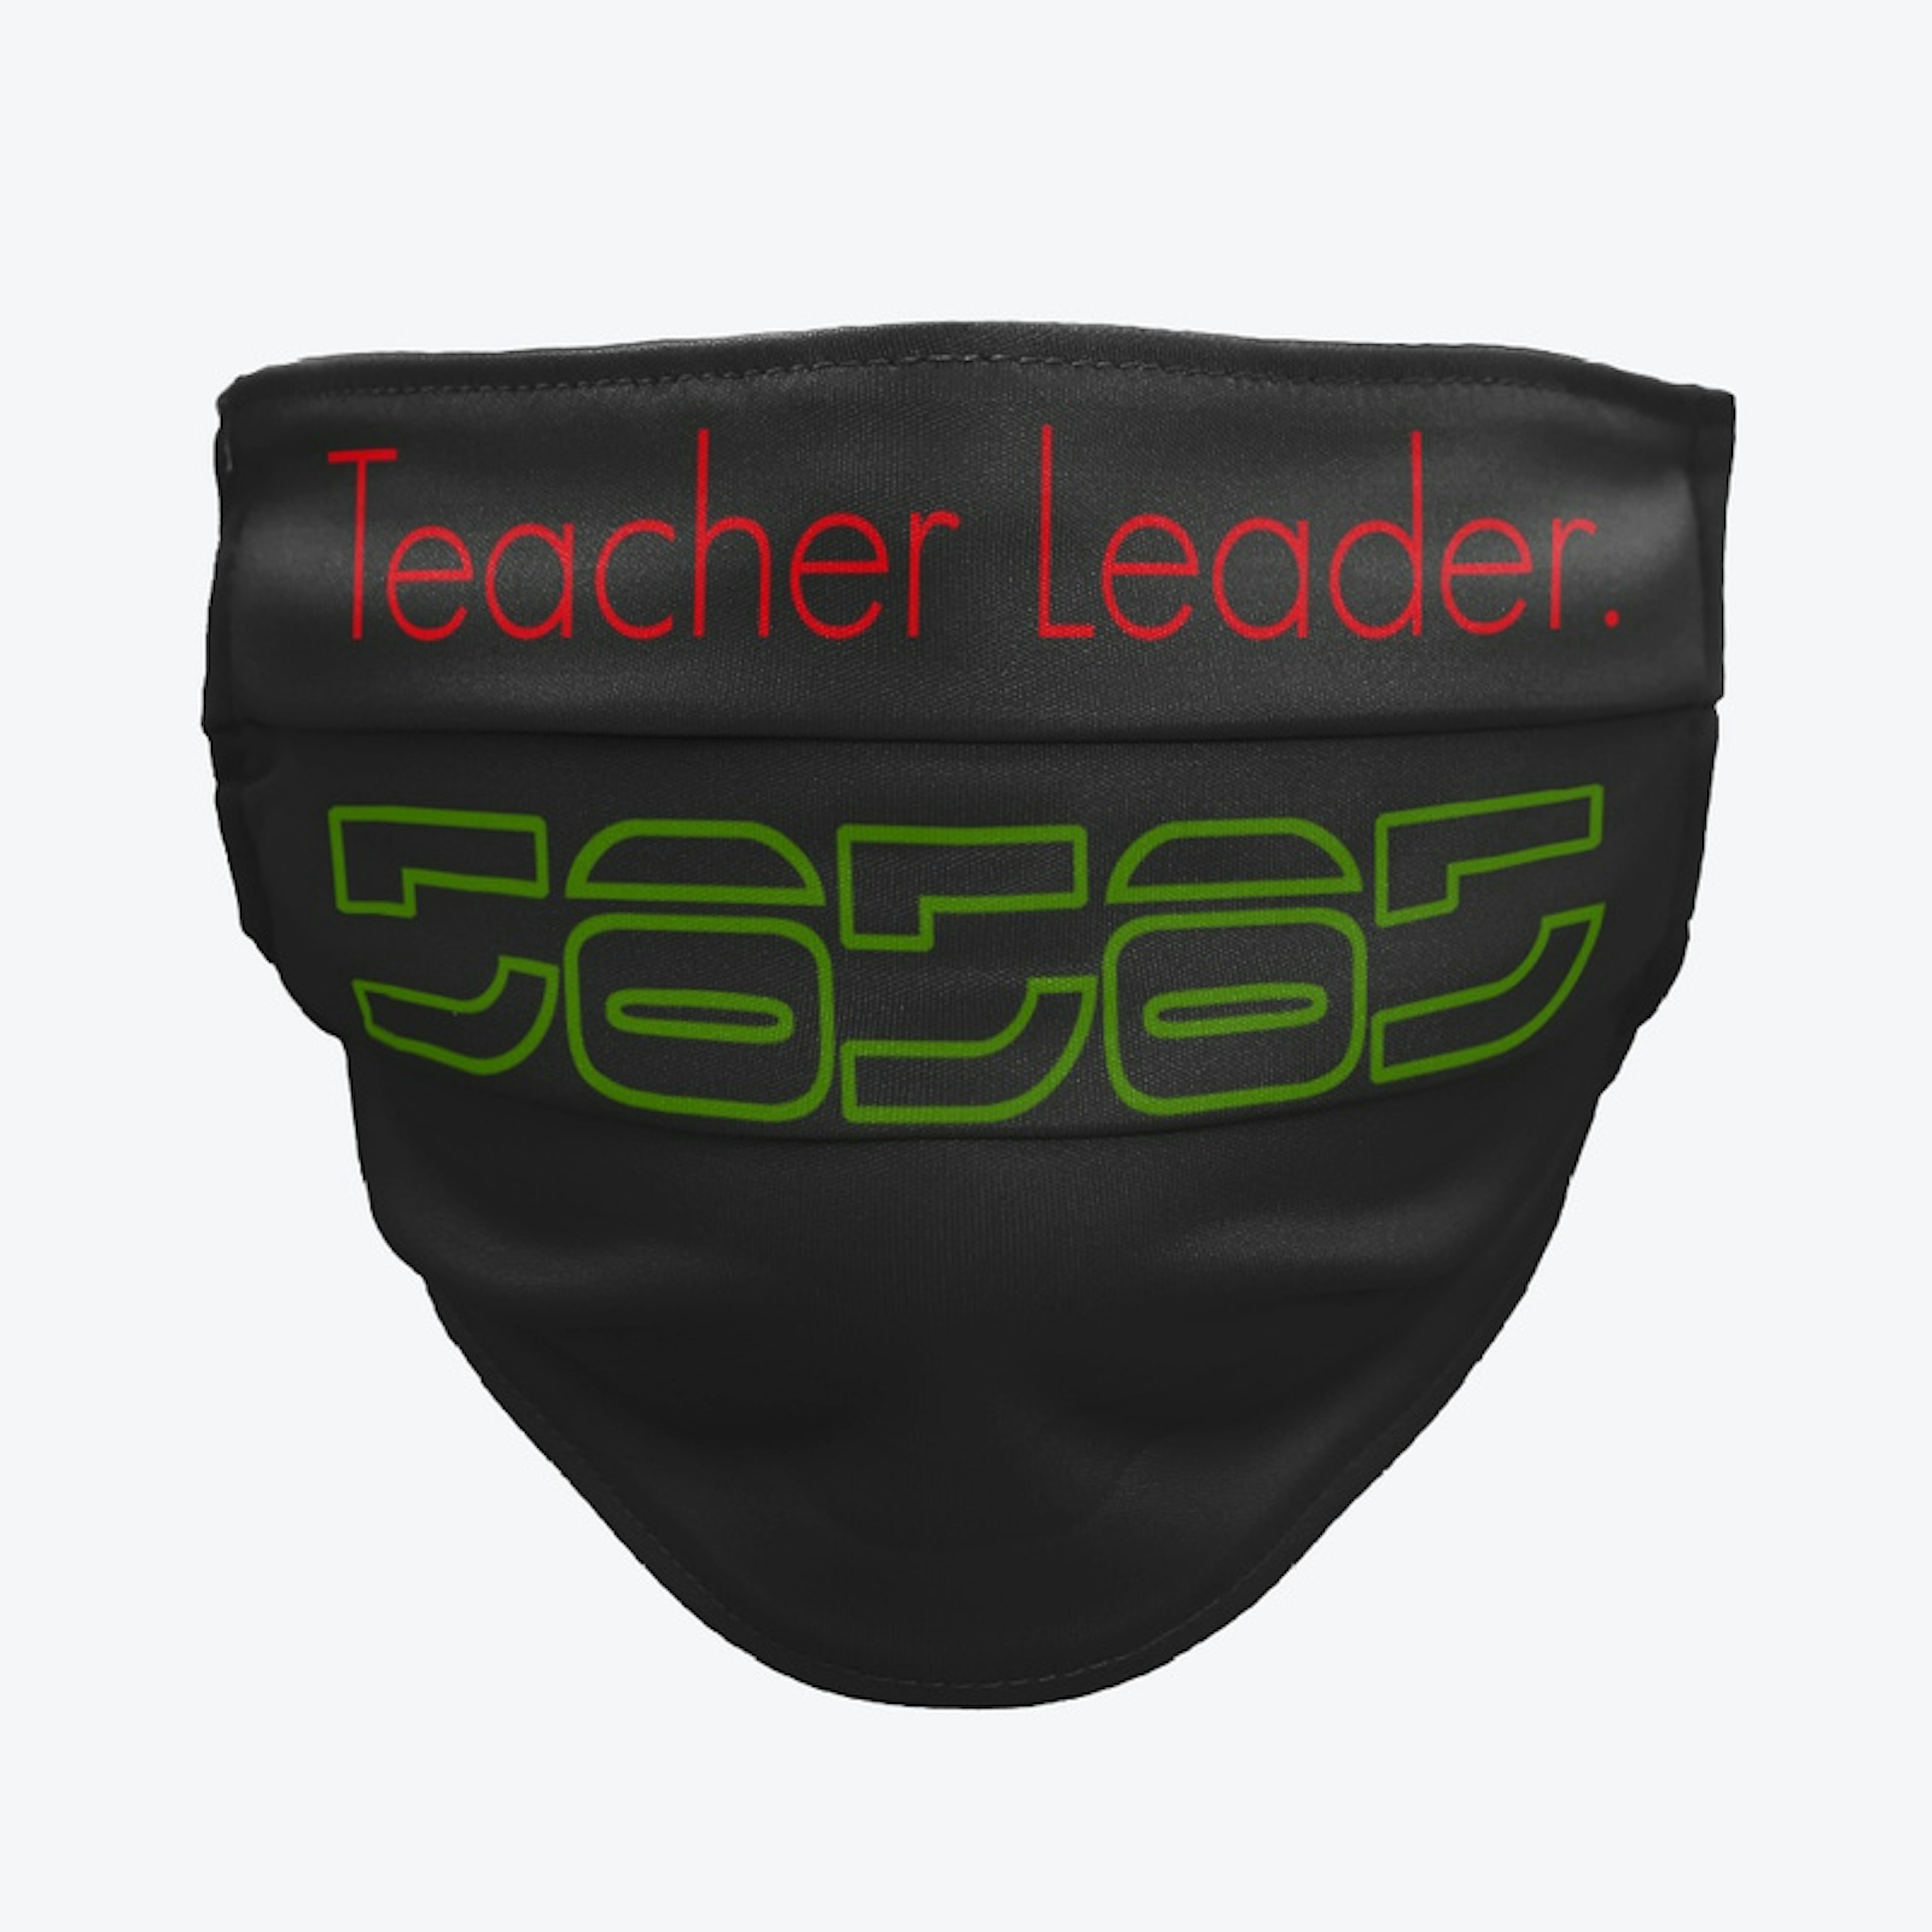 Teacher Leader.